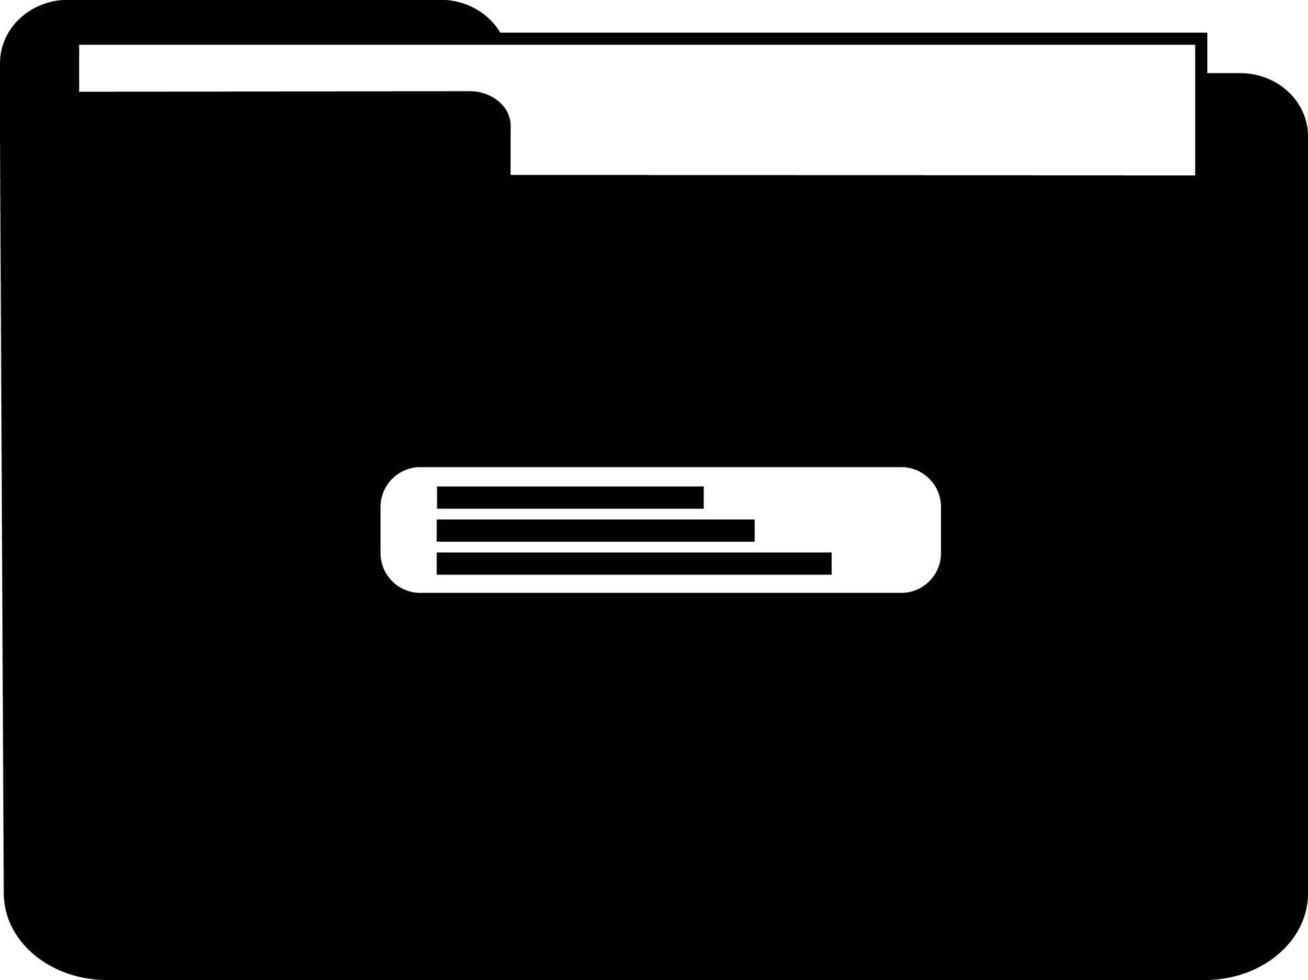 icône de dossier de document, silhouette noire. mis en évidence sur un fond blanc. illustration vectorielle vecteur